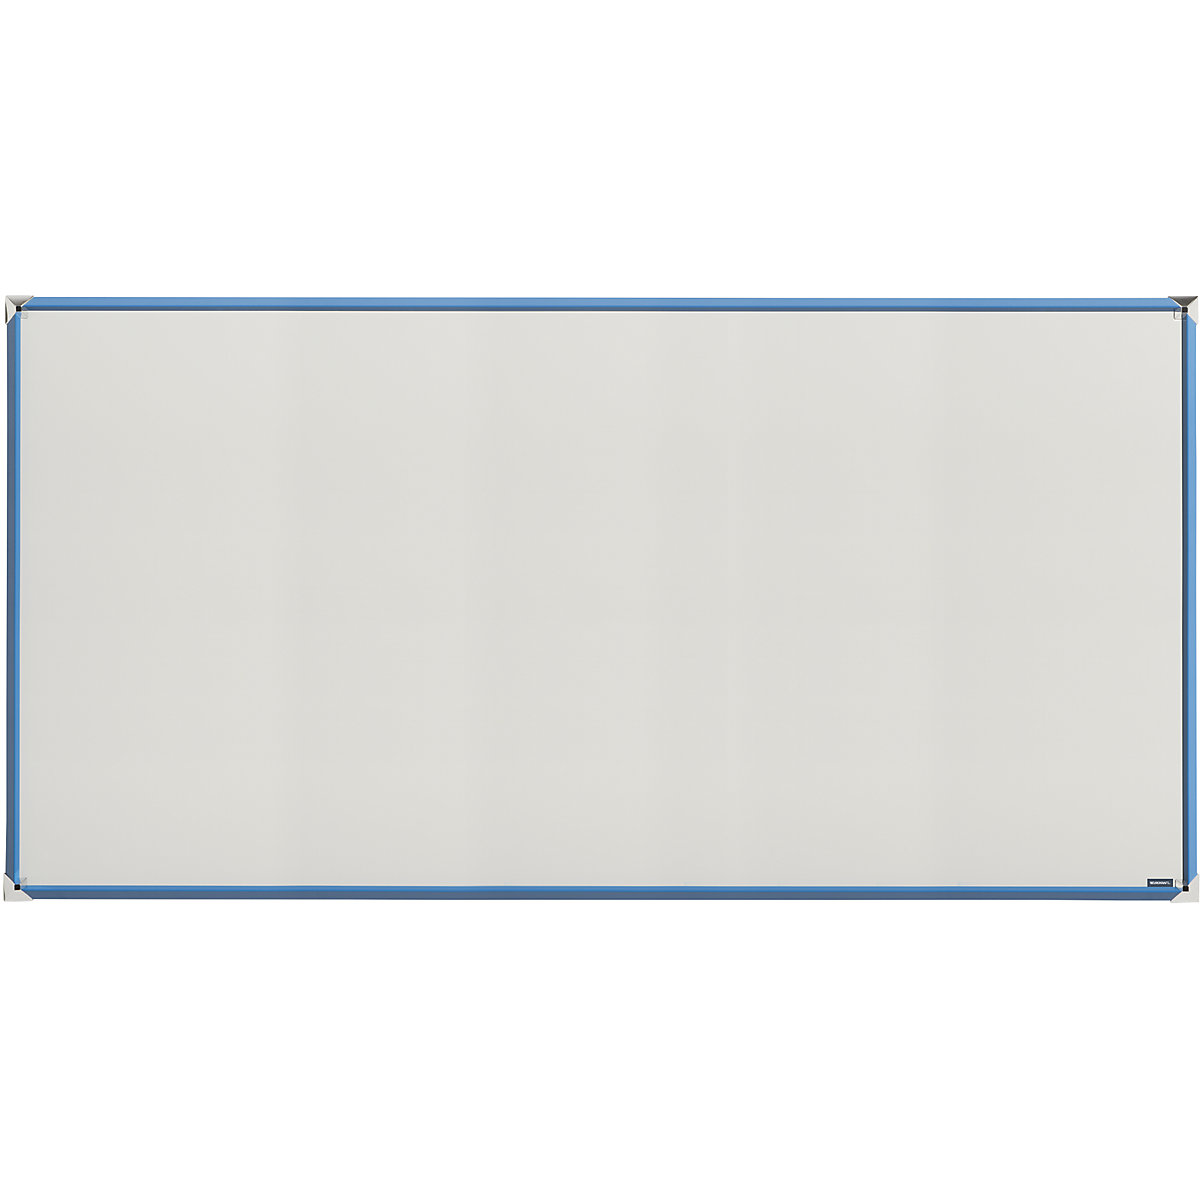 EUROKRAFTpro – Tablica biała z designerską ramą, blacha stalowa, emaliowana, szer. x wys. 2000 x 1000 mm, rama jasnoniebieska